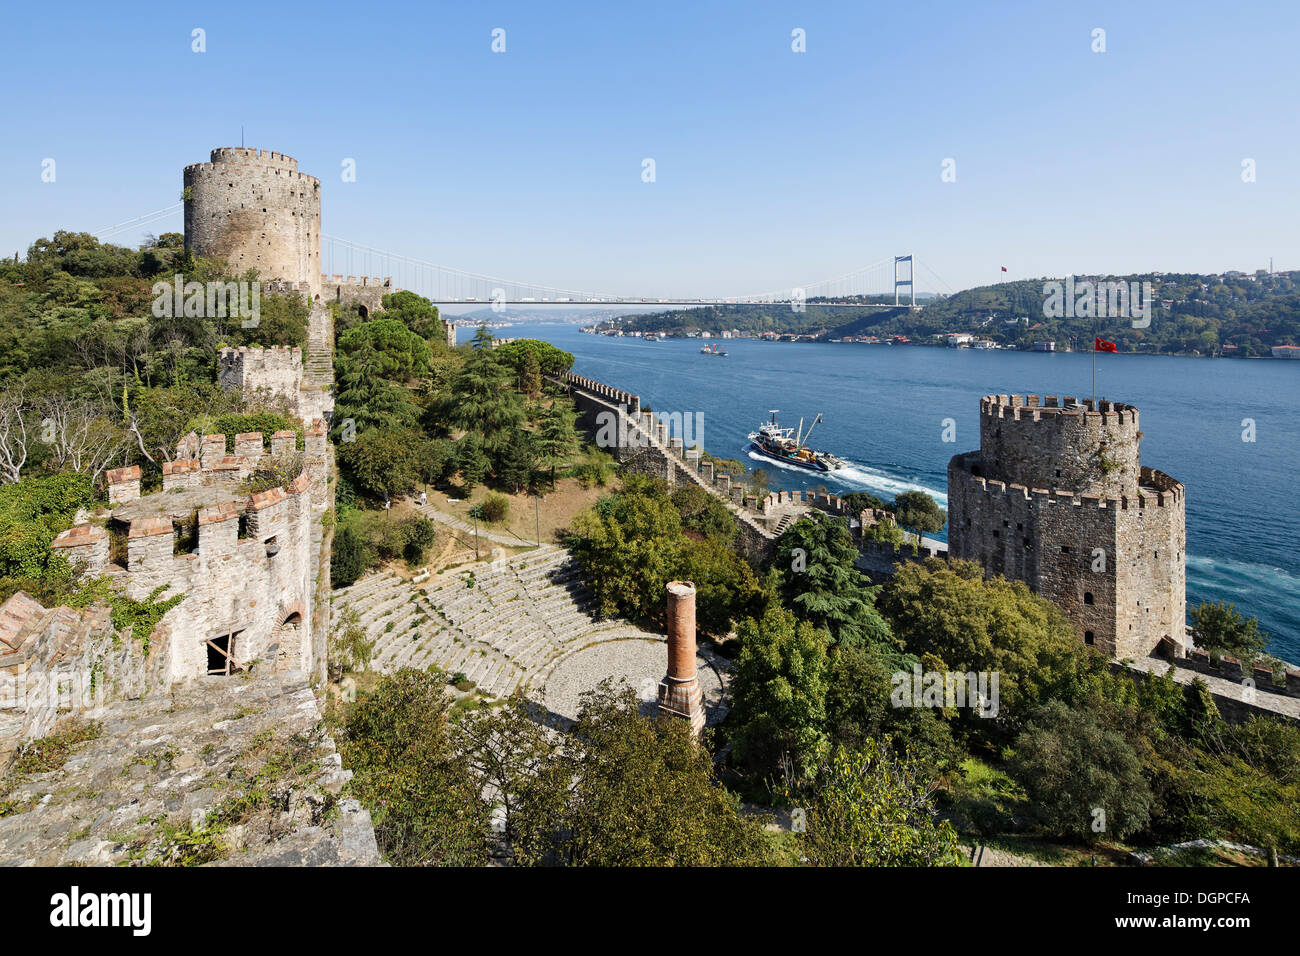 Rumeli Hisari, Festung Europa, in Sariyer, Fatih Sultan Mehmet-Brücke, 2. Bosporus Brücke, Bosporus, Istanbul, Türkei Stockfoto